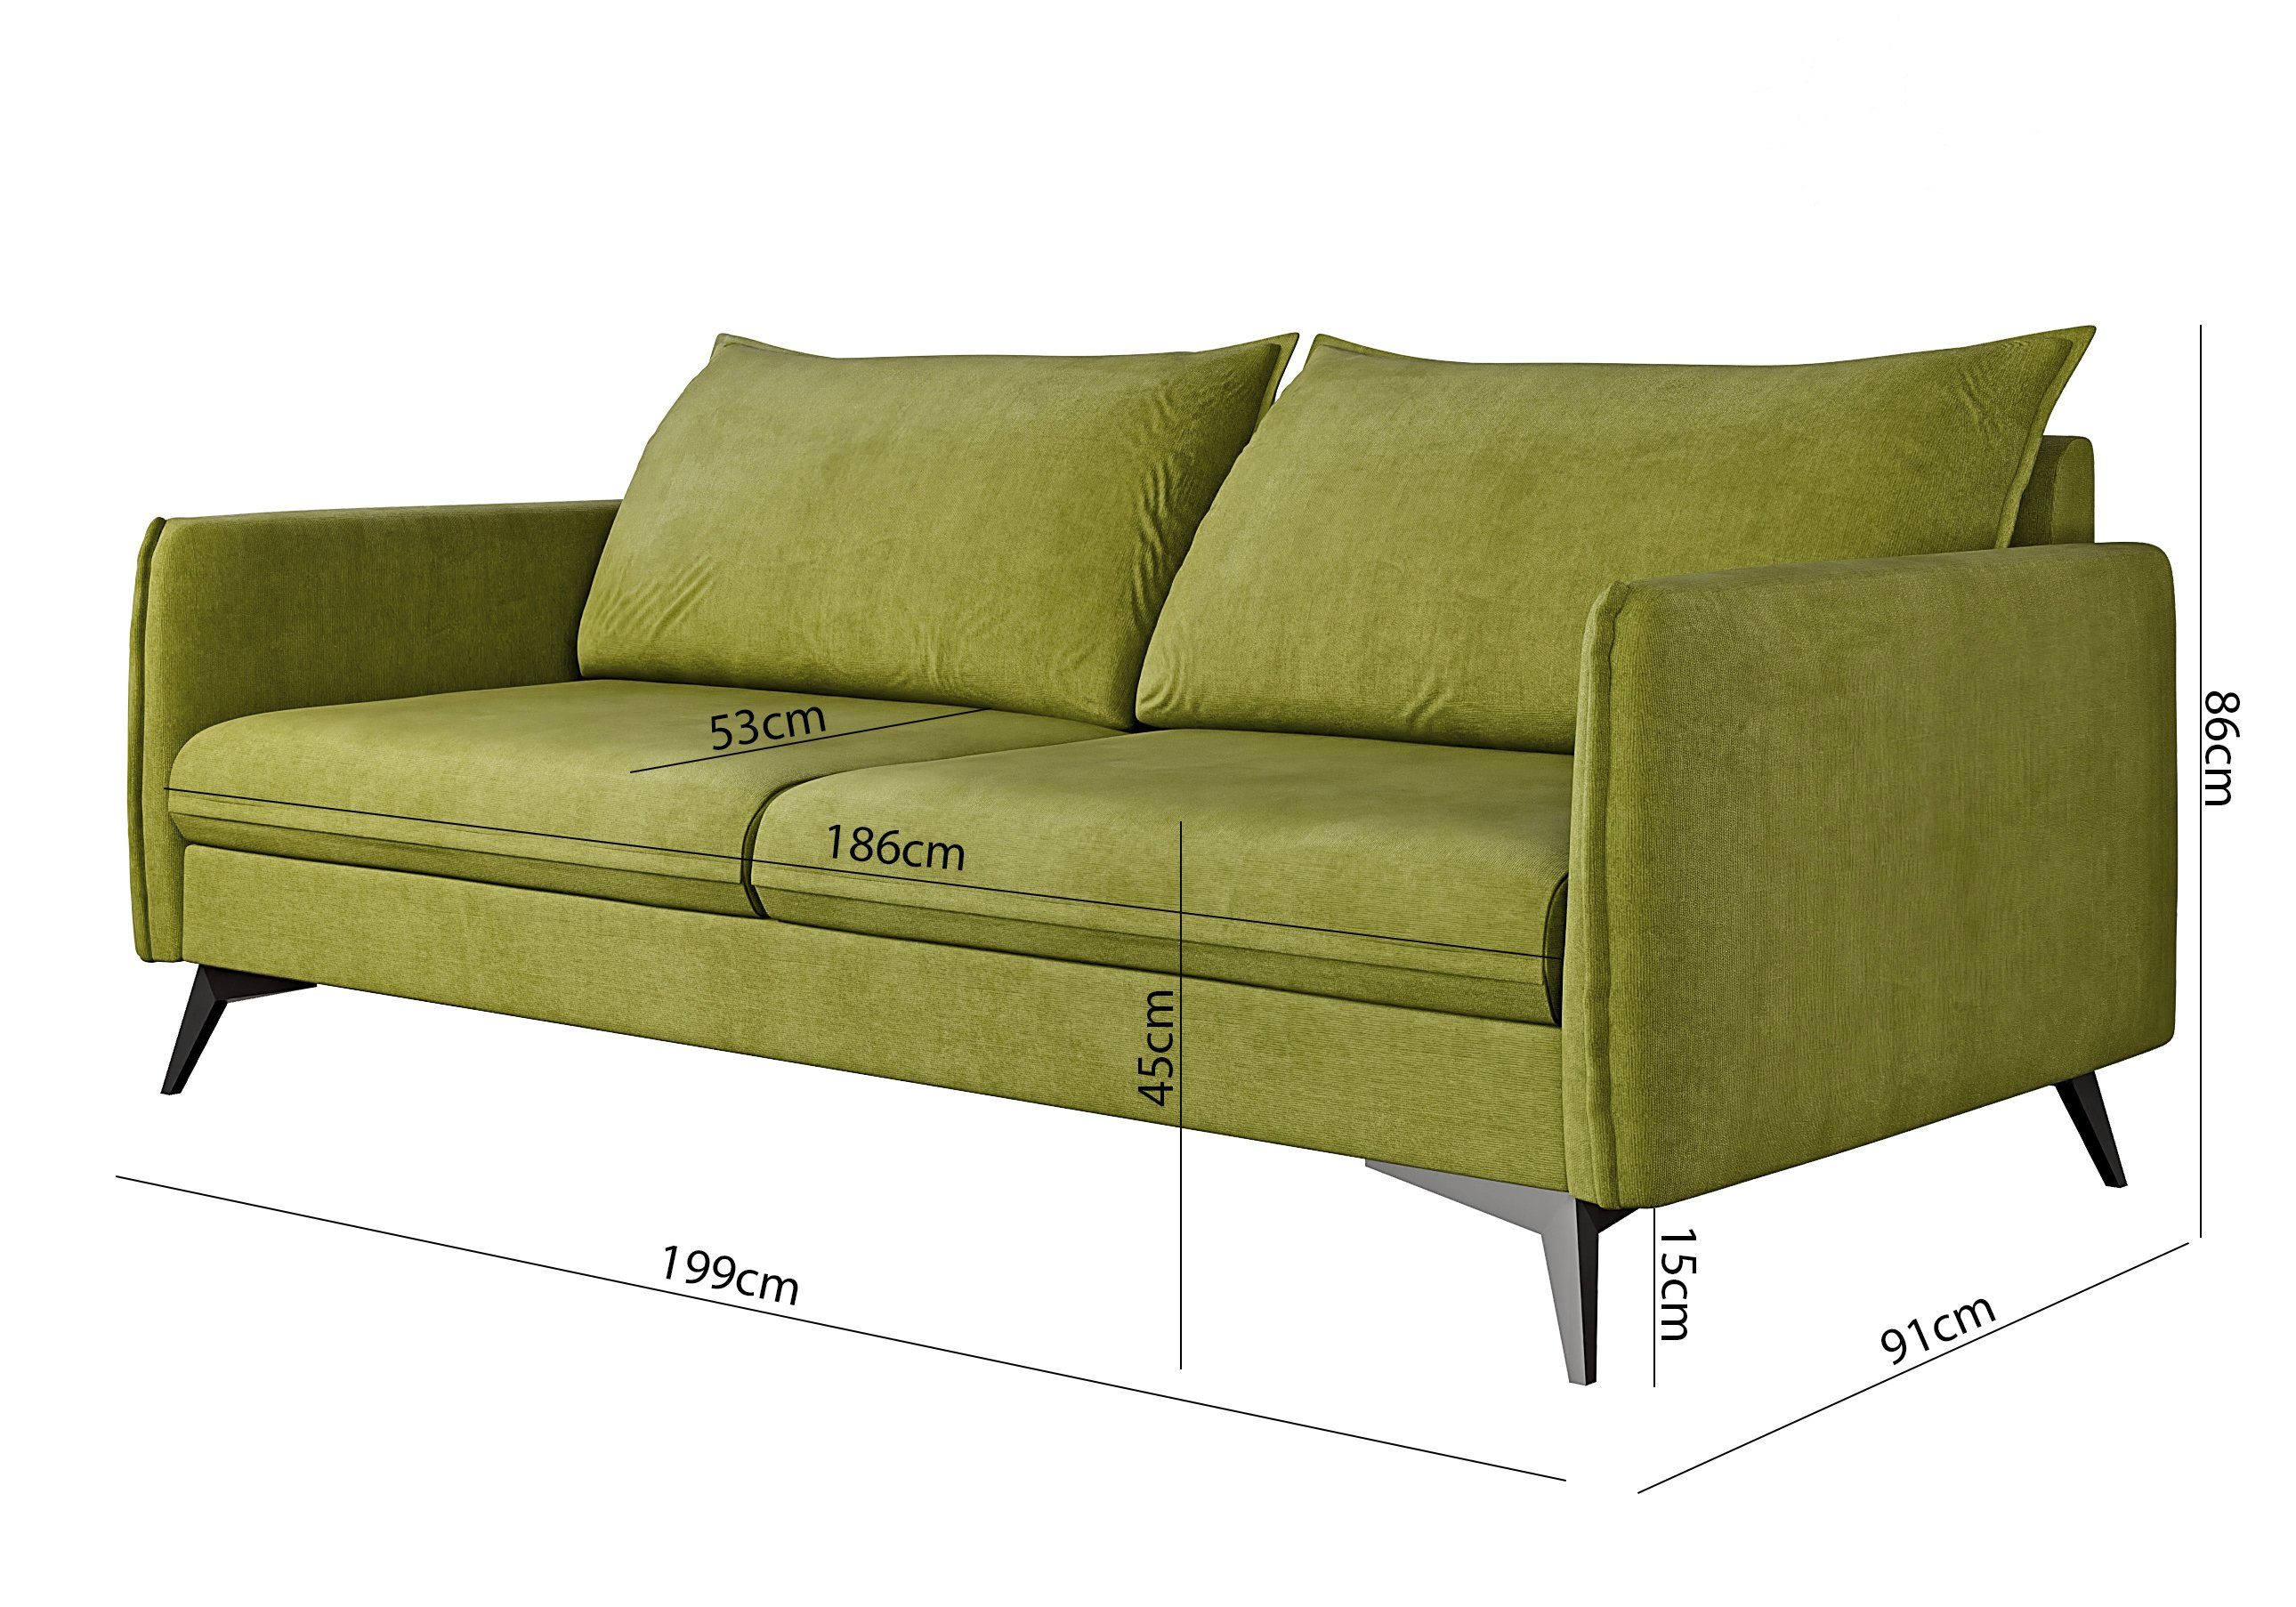 1x 2-Sitzer-Sofa, Azalea 3-Sitzer-Sofa, 1x mit Sessel), Metall 3+2+1 Modernes Möbel Polstergarnitur Wellenfederung S-Style mit Grün Füßen, (1x Schwarz